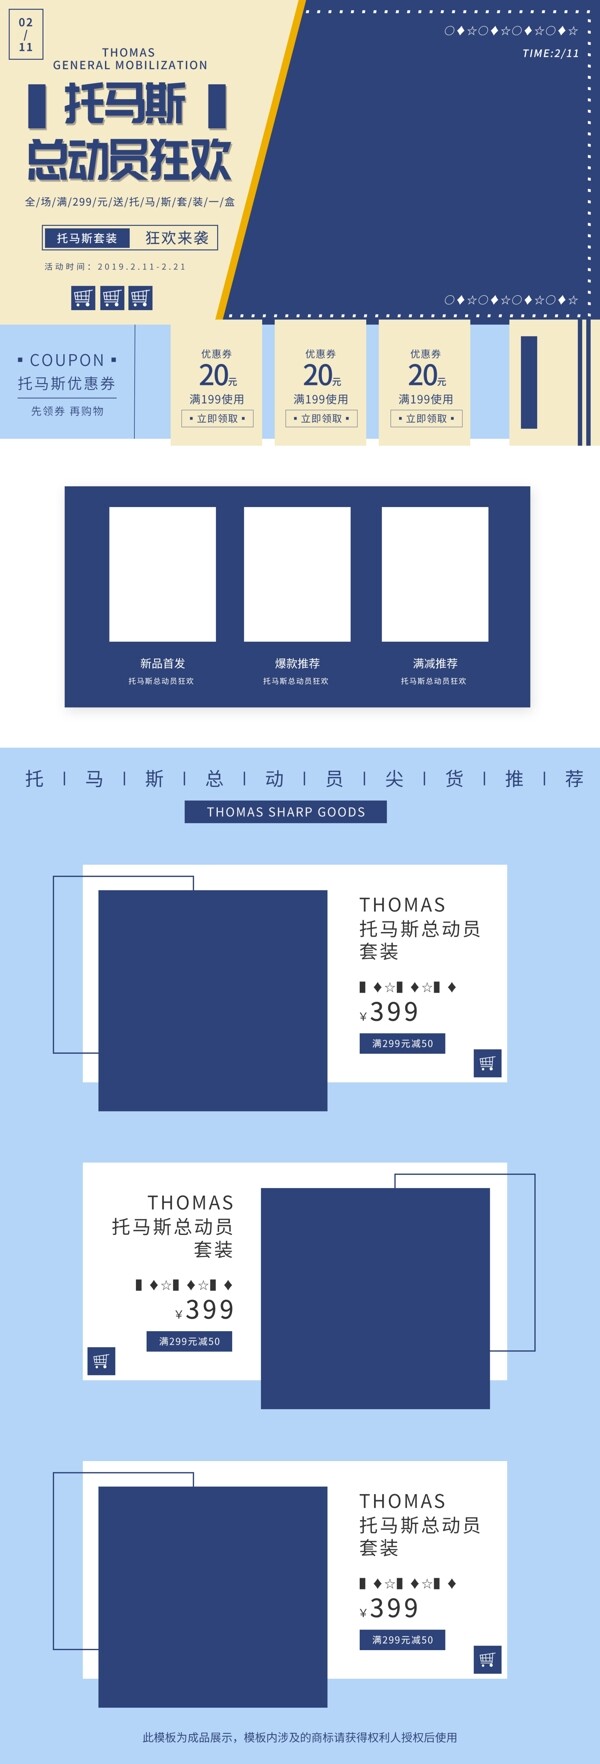 托马斯总动员蓝色简约促销模板首页